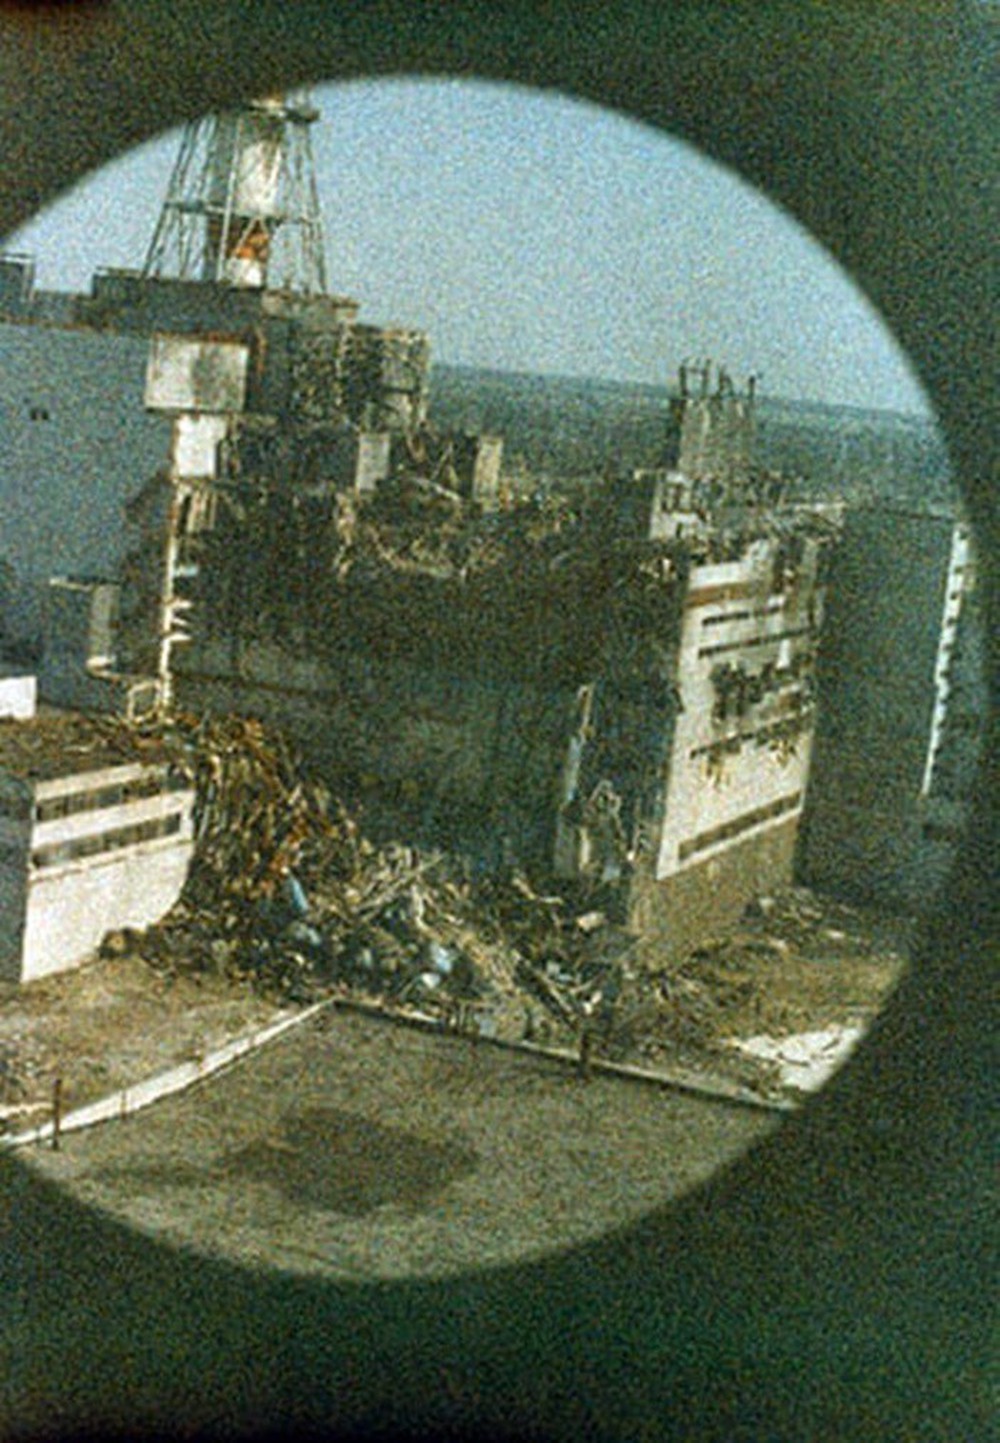 Những bức ảnh hơn vạn lời nói cho thấy mức độ khủng khiếp của thảm họa hạt nhân Chernobyl: Vùng đất chết chóc bao giờ mới hồi sinh? - Ảnh 1.